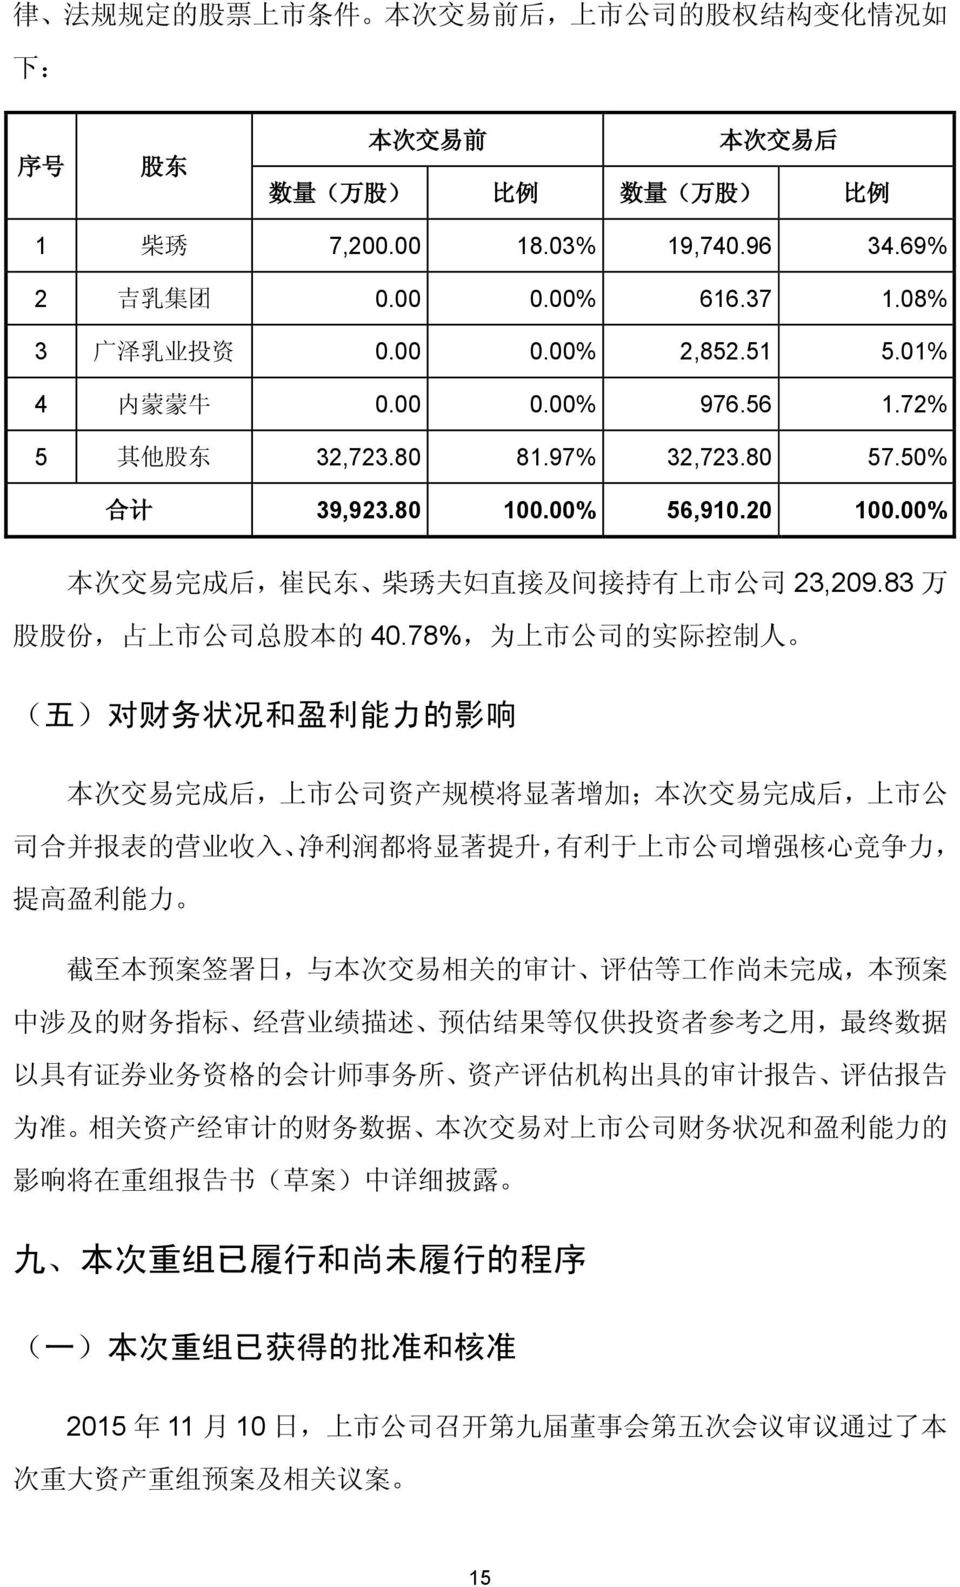 00% 本 次 交 易 完 成 后, 崔 民 东 柴 琇 夫 妇 直 接 及 间 接 持 有 上 市 公 司 23,209.83 万 股 股 份, 占 上 市 公 司 总 股 本 的 40.